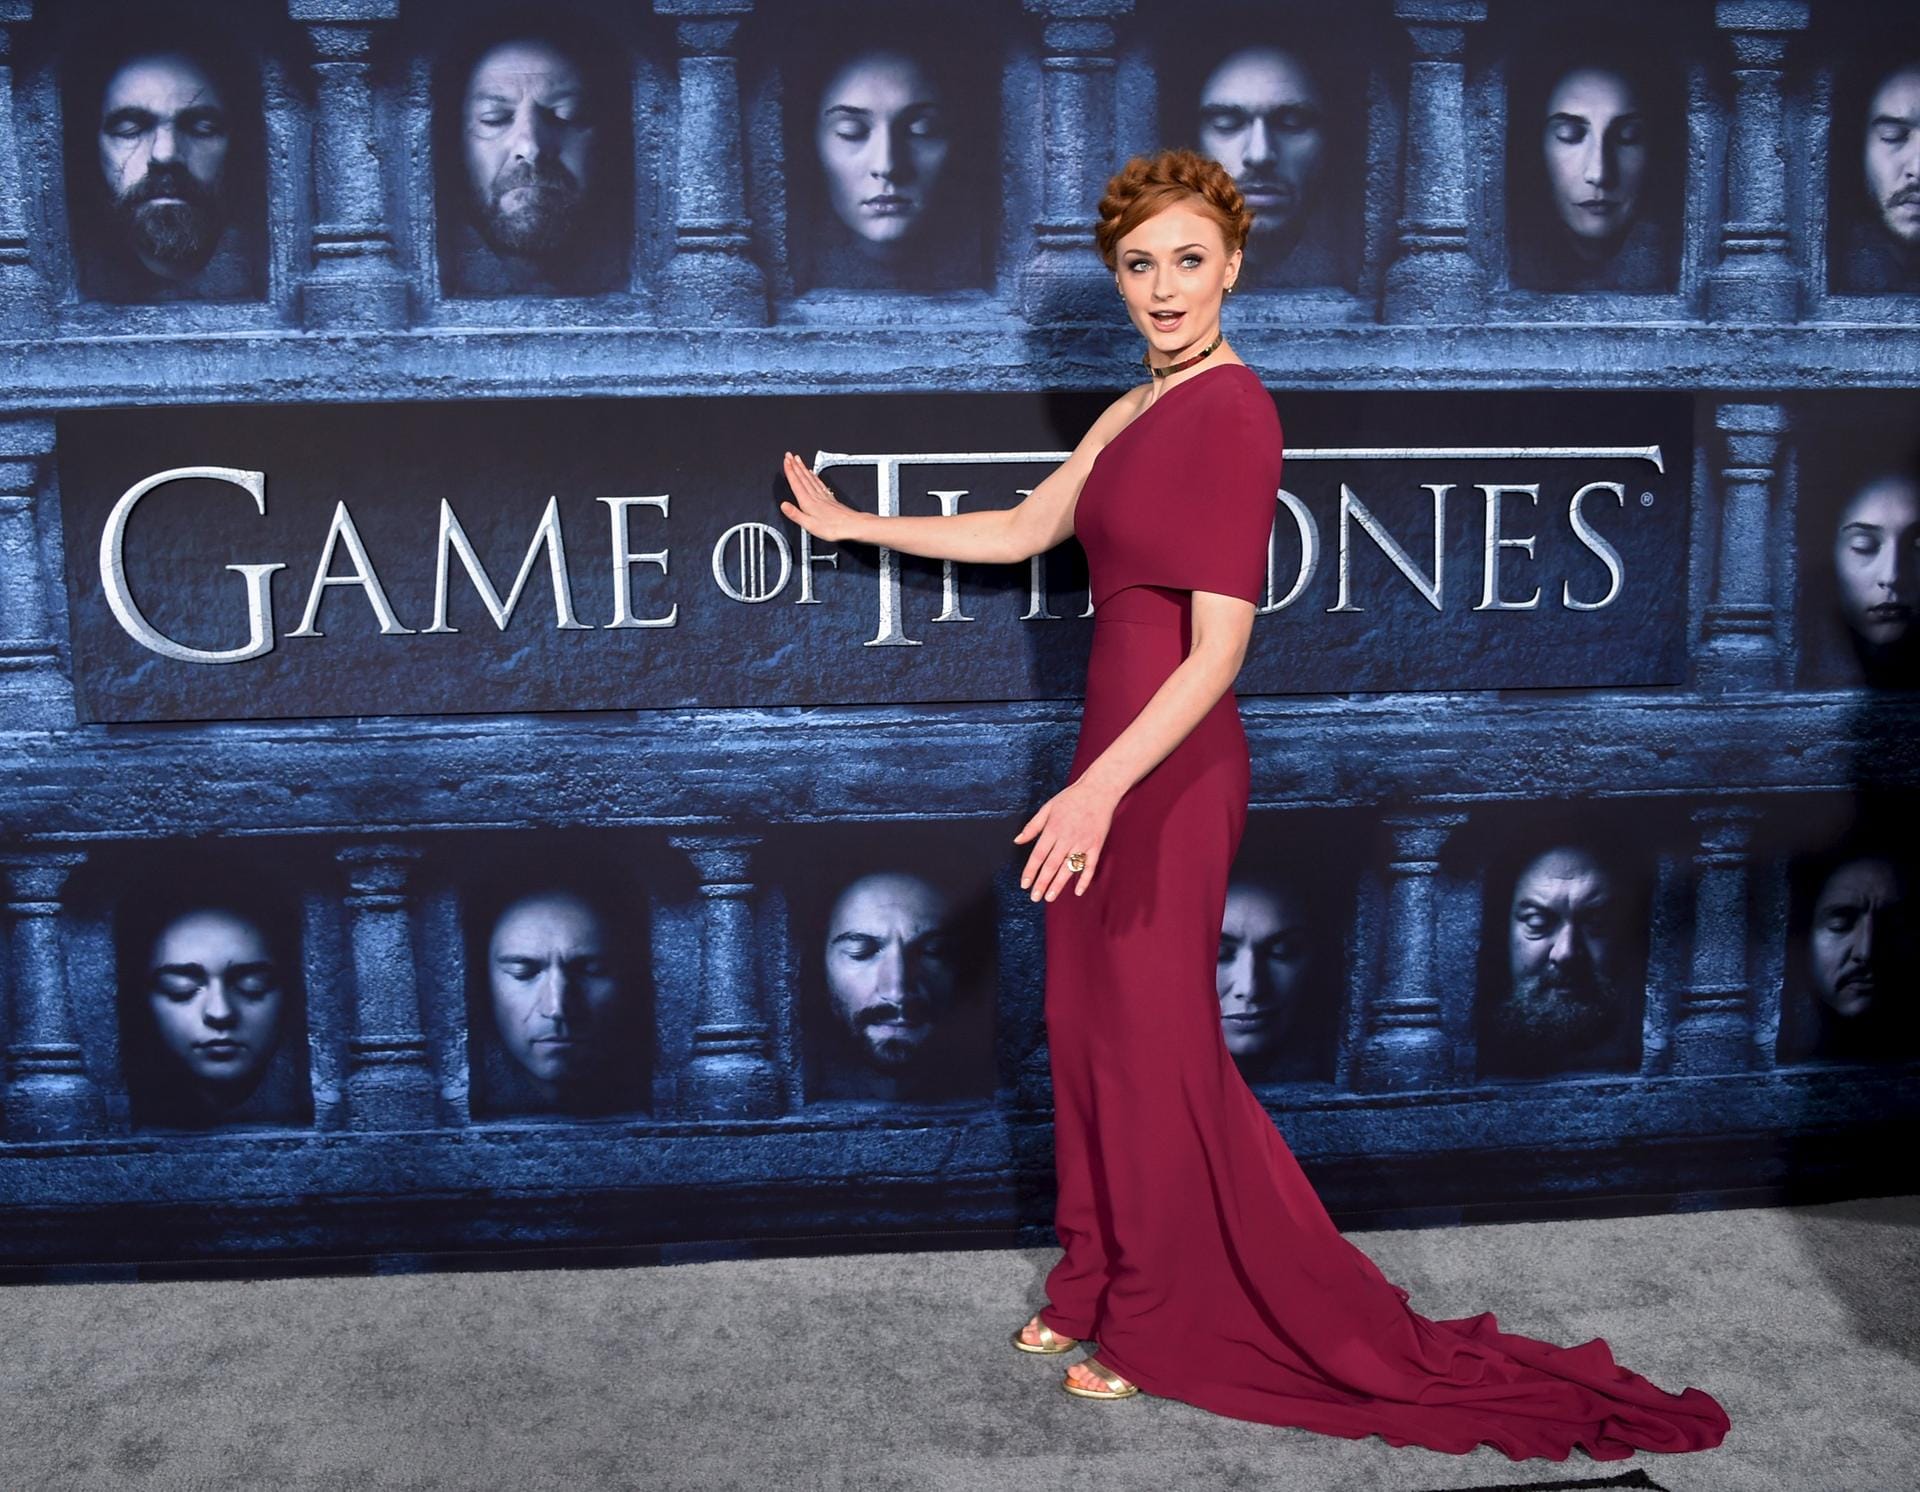 Sophie Turner (spielt Sansa Stark) sehr edel ganz in Rot bei der Weltpremiere der sechsten "Game of Thrones"-Staffel in Los Angeles.